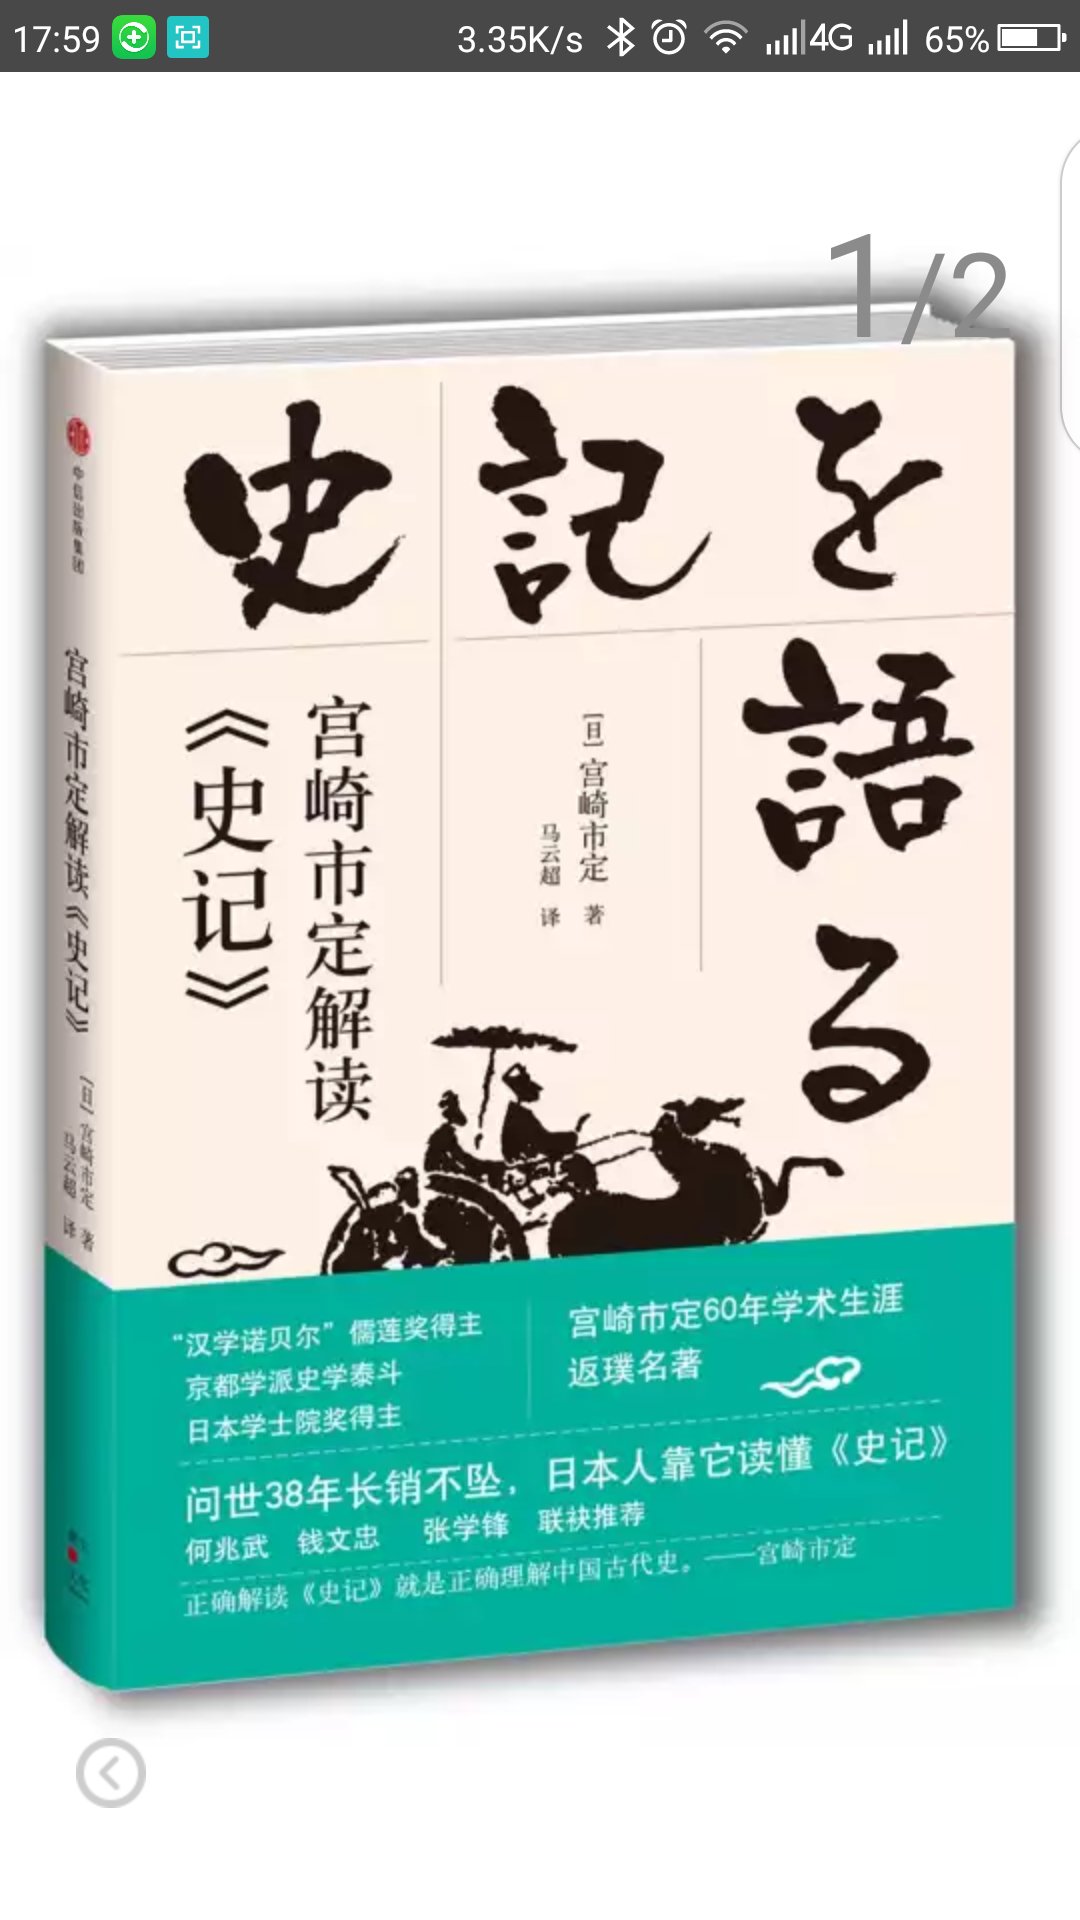 宫崎市定毕生致力于中国史的研究与教学，治学方法与中国“知人论世”的史学传统如符若契，又对司马迁顶礼膜拜，晚年曾计划将“人物论”的代表作品《史记&middot;列传》全译为日文。本书正是宫崎本人的“人物论”，也是他的著作中zui为通俗好读的一部，收录了他在漫长的研究生涯中重点关注过的人物，包括“大帝与名君”（秦始皇、汉武帝、隋炀帝、康熙、雍正），“乱世宰相”（李斯、冯道、贾似道），“资本家与地方官”（晋阳李氏、宋江、蓝鼎元），“儒家与文人”（孔子、朱子、张溥、石涛），涵盖各个时代和阶层，极具代表性。    作者以深厚的史学功底为基础，以独特的视角、生动的文风，对这些历史上“ZUI有料”的人物之魅力、功罪和时代进行描绘，抽丝剥茧般的分析与想象力飞扬的叙事融合无间，重现了司马迁以降摄人心魄的历史叙述。